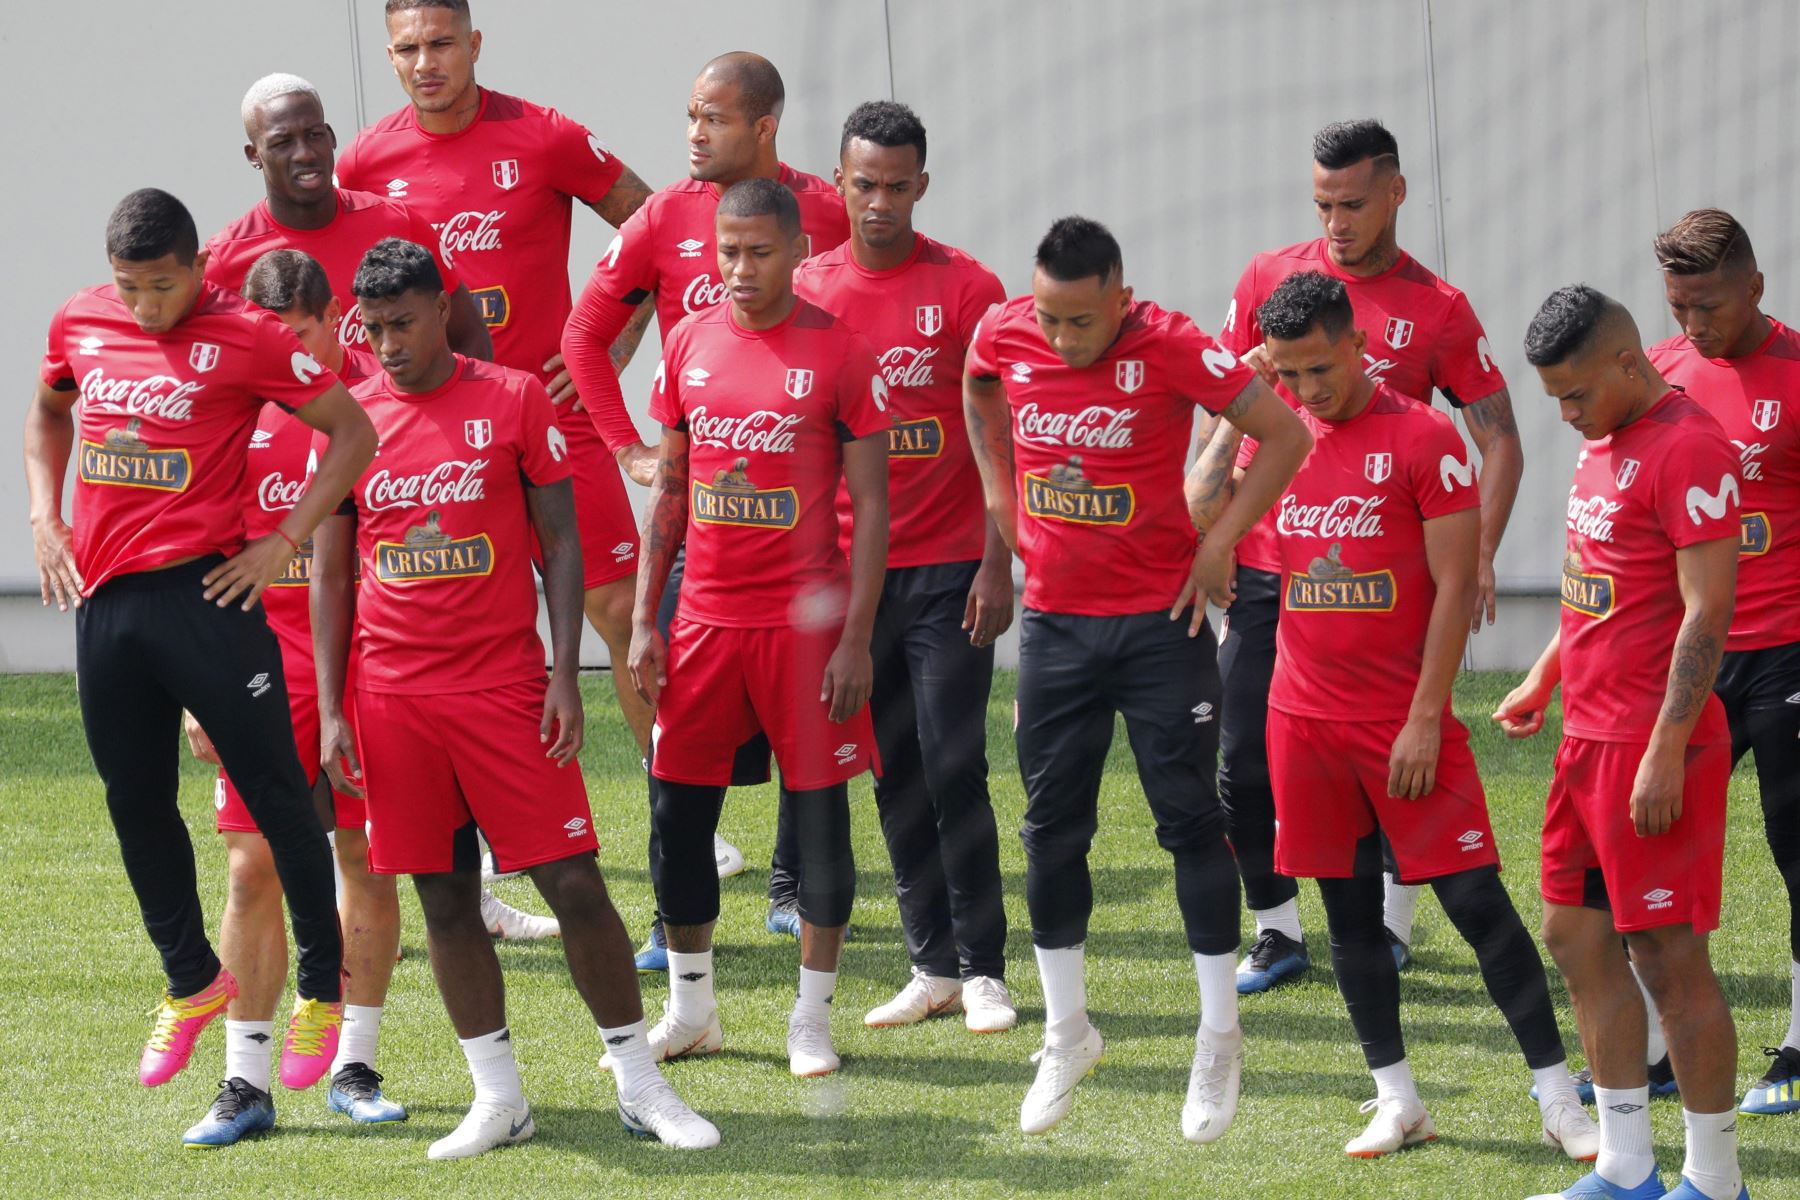 Los jugadores de la selección de Perú, durante la sesión de entrenamiento celebrada esta mañana en el estadio Khimki de Moscú, Rusia, de cara a su próximo partido frente a Francia, correspondiente al Grupo C de la primera fase del Mundial Rusia 2018, el próximo 21 de junio. EFE